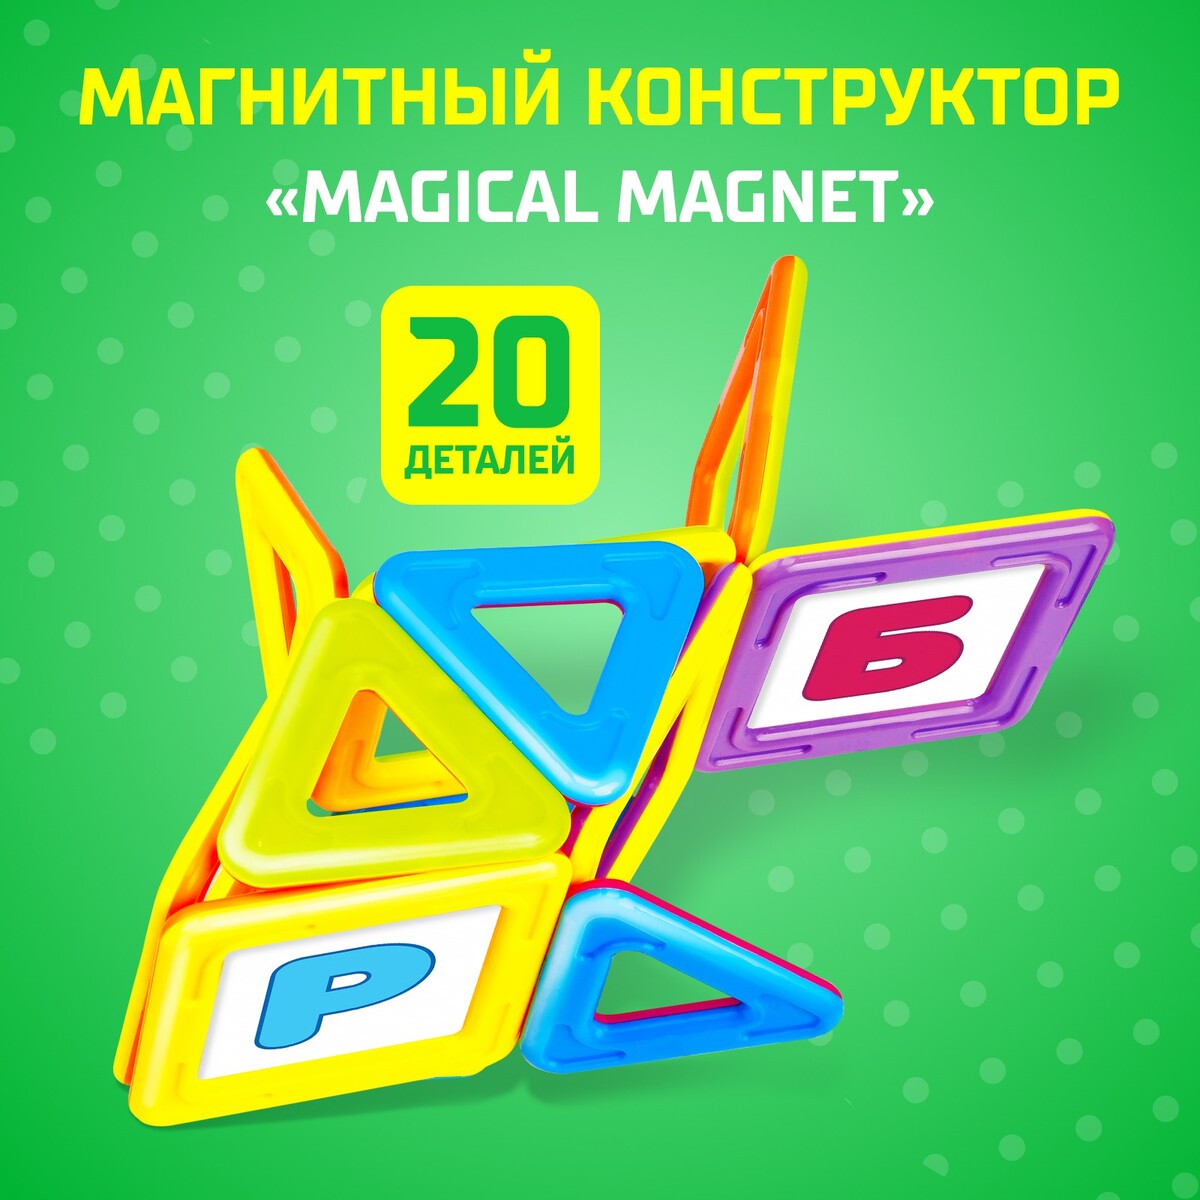 Магнитный конструктор magical magnet, 20 деталей, детали матовые конструктор магнитный 62 детали